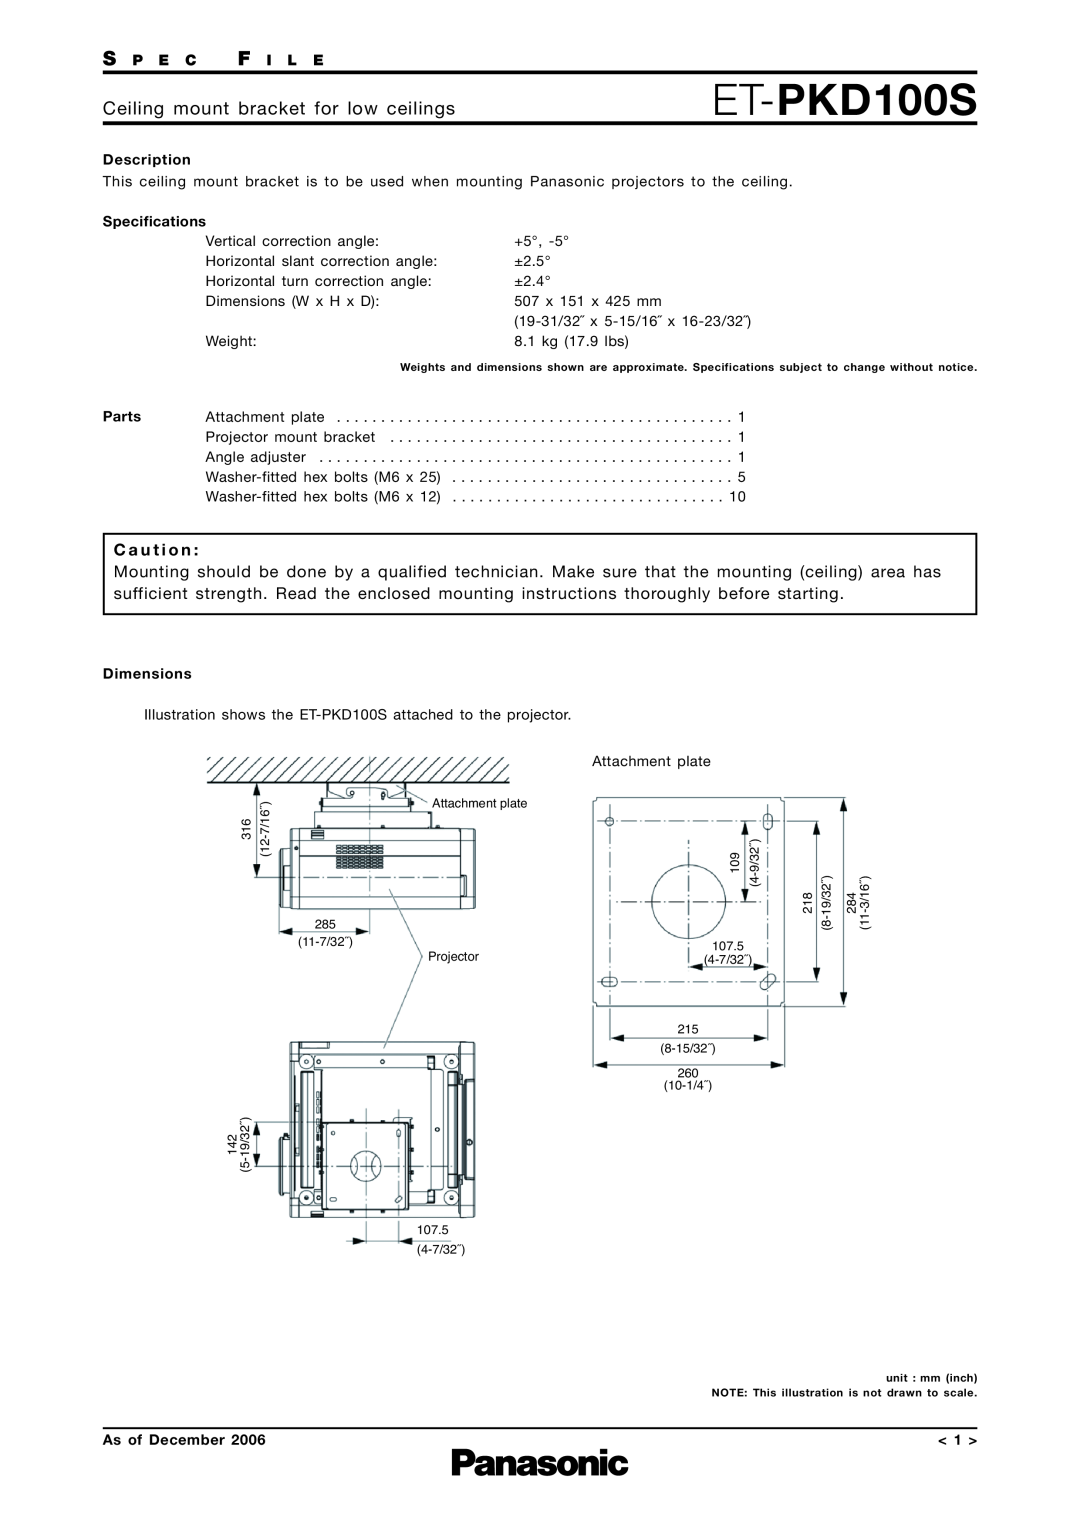 Panasonic ET-PKD100S specifications Ceiling mount bracket for low ceilings, C a u t i o n, S P E C F I L E, Description 